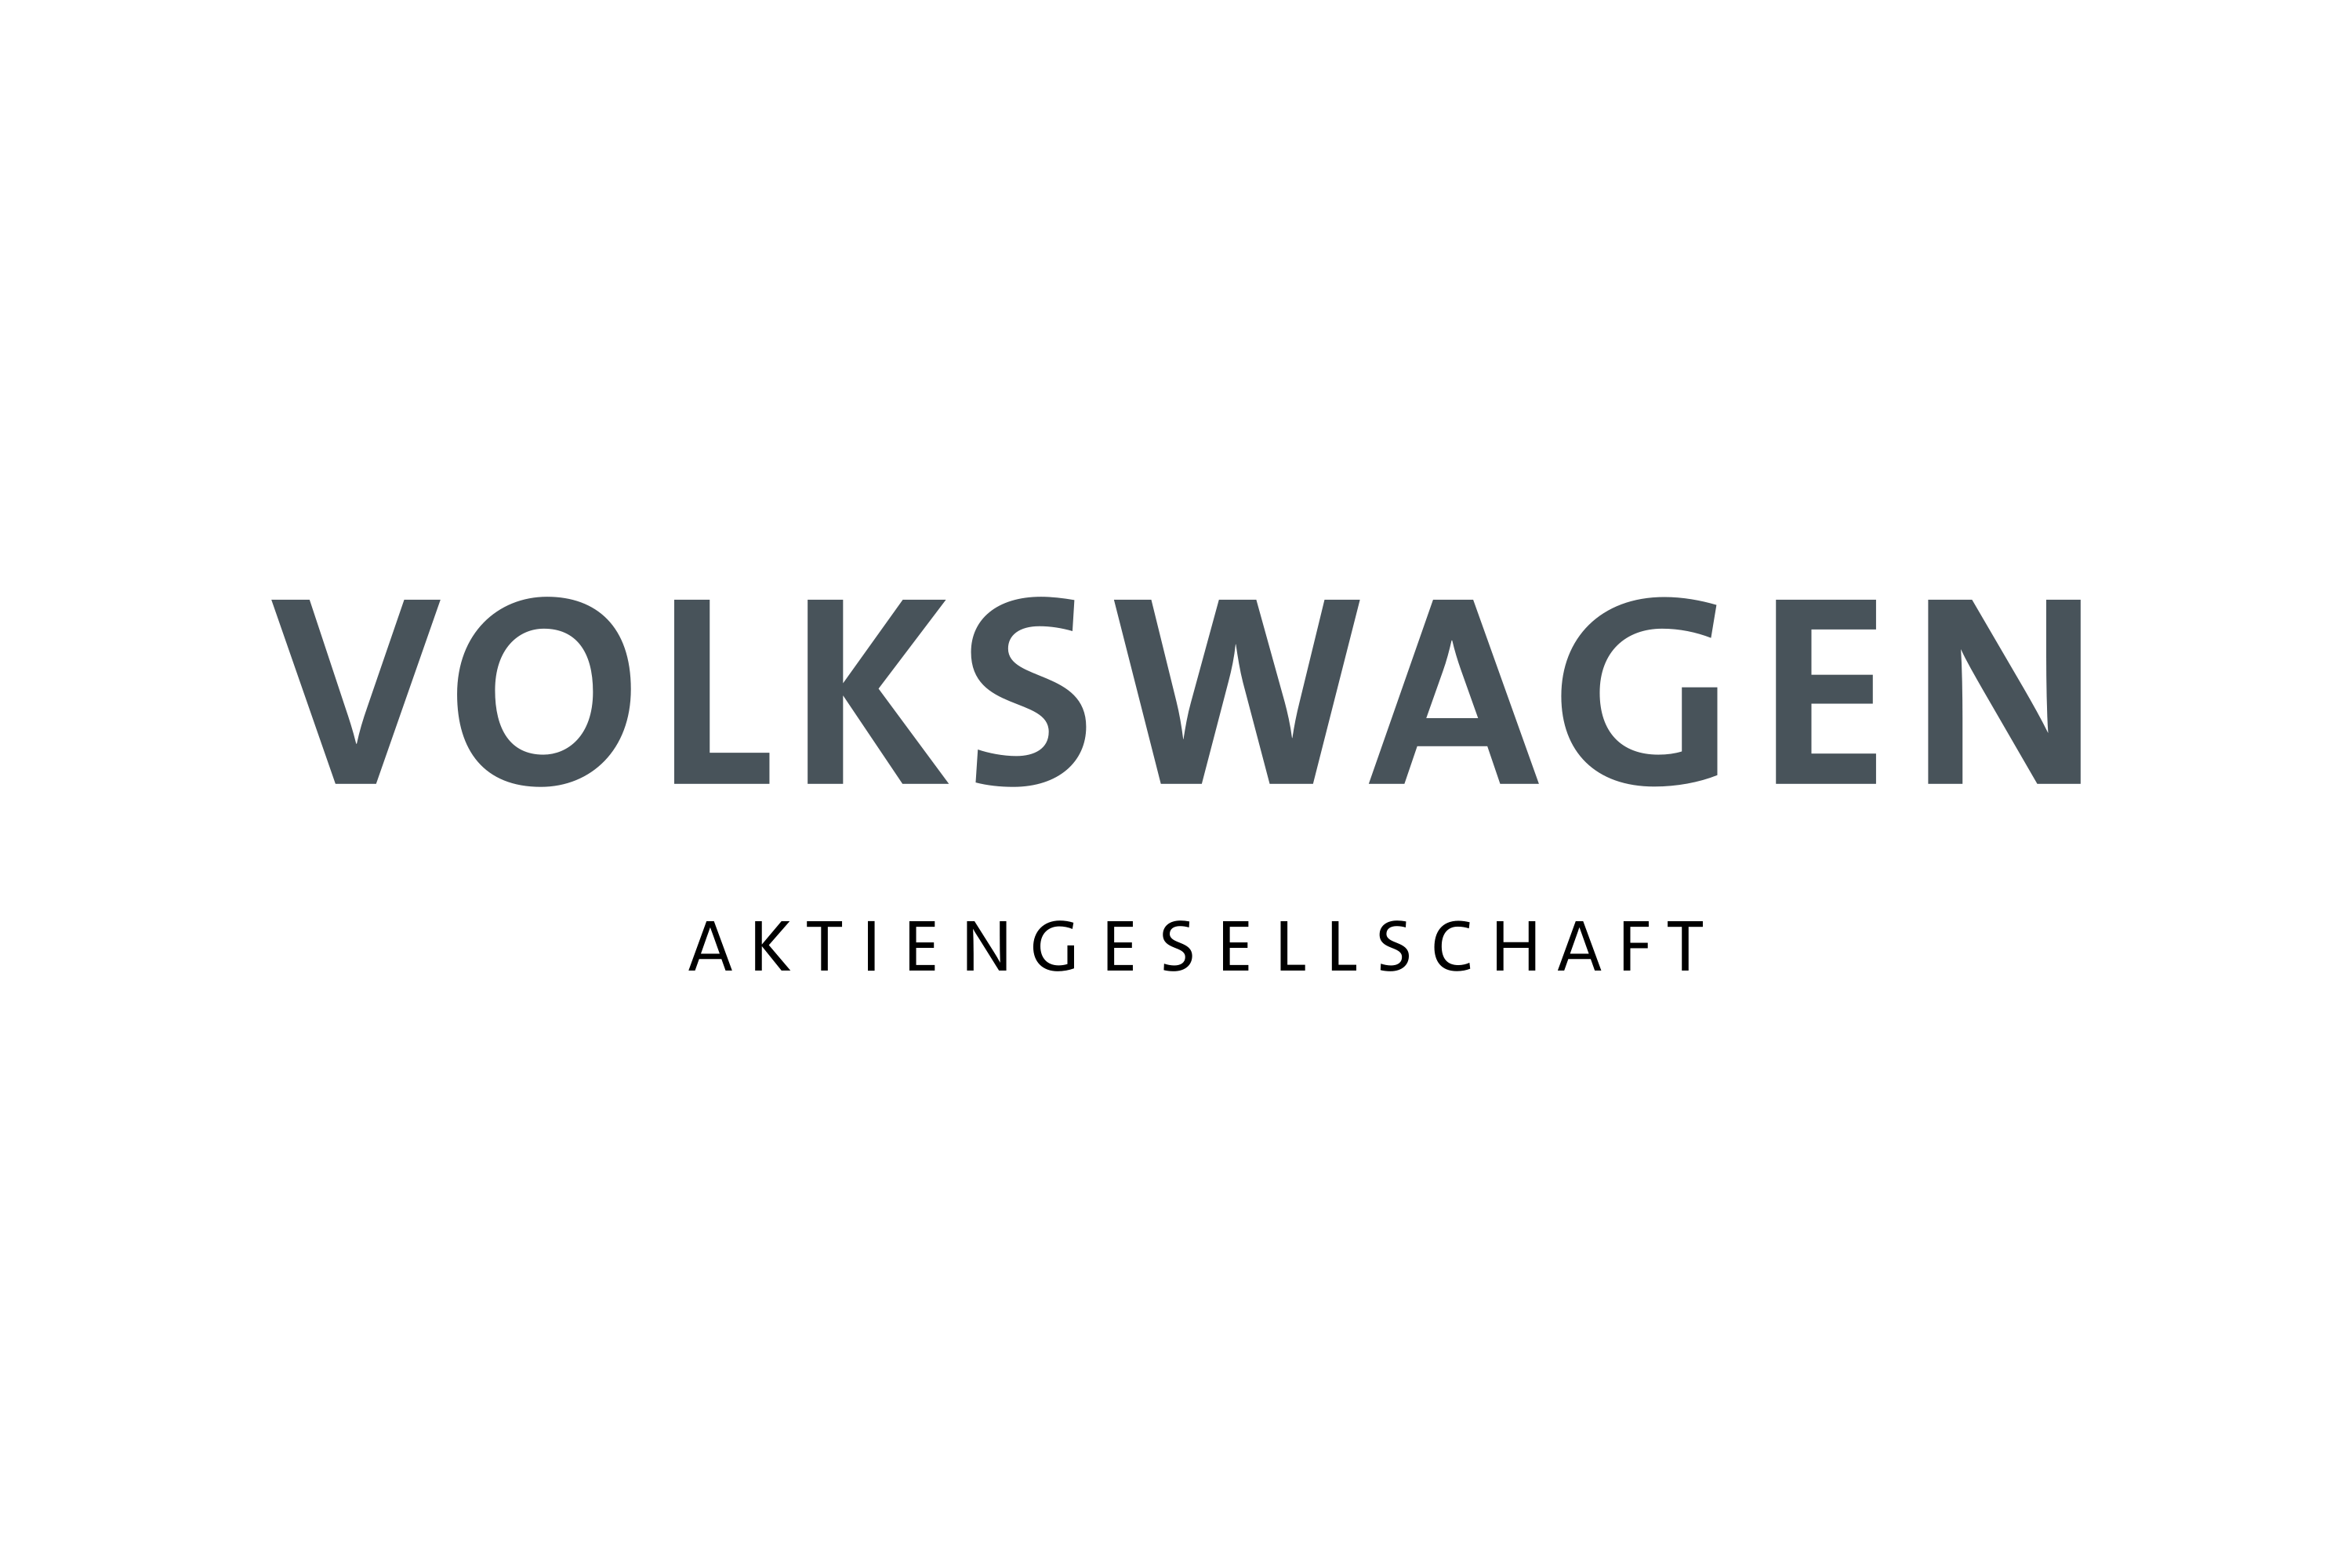 Download Volkswagen Group Logo in SVG Vector or PNG File Format - Logo.wine